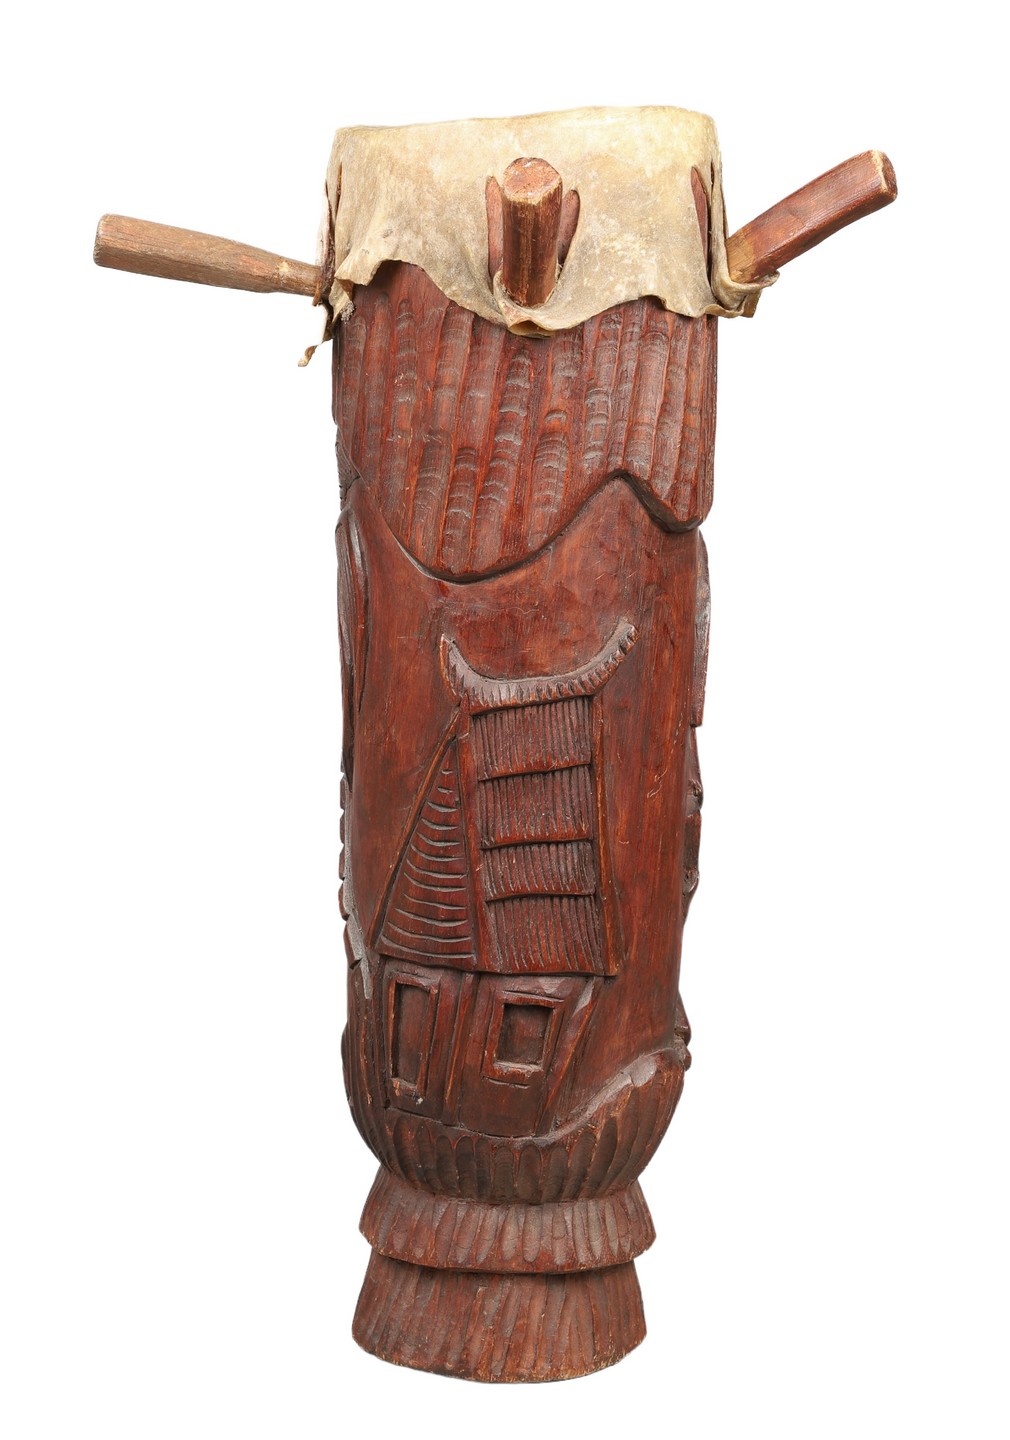 African carved wood drum, hide drum